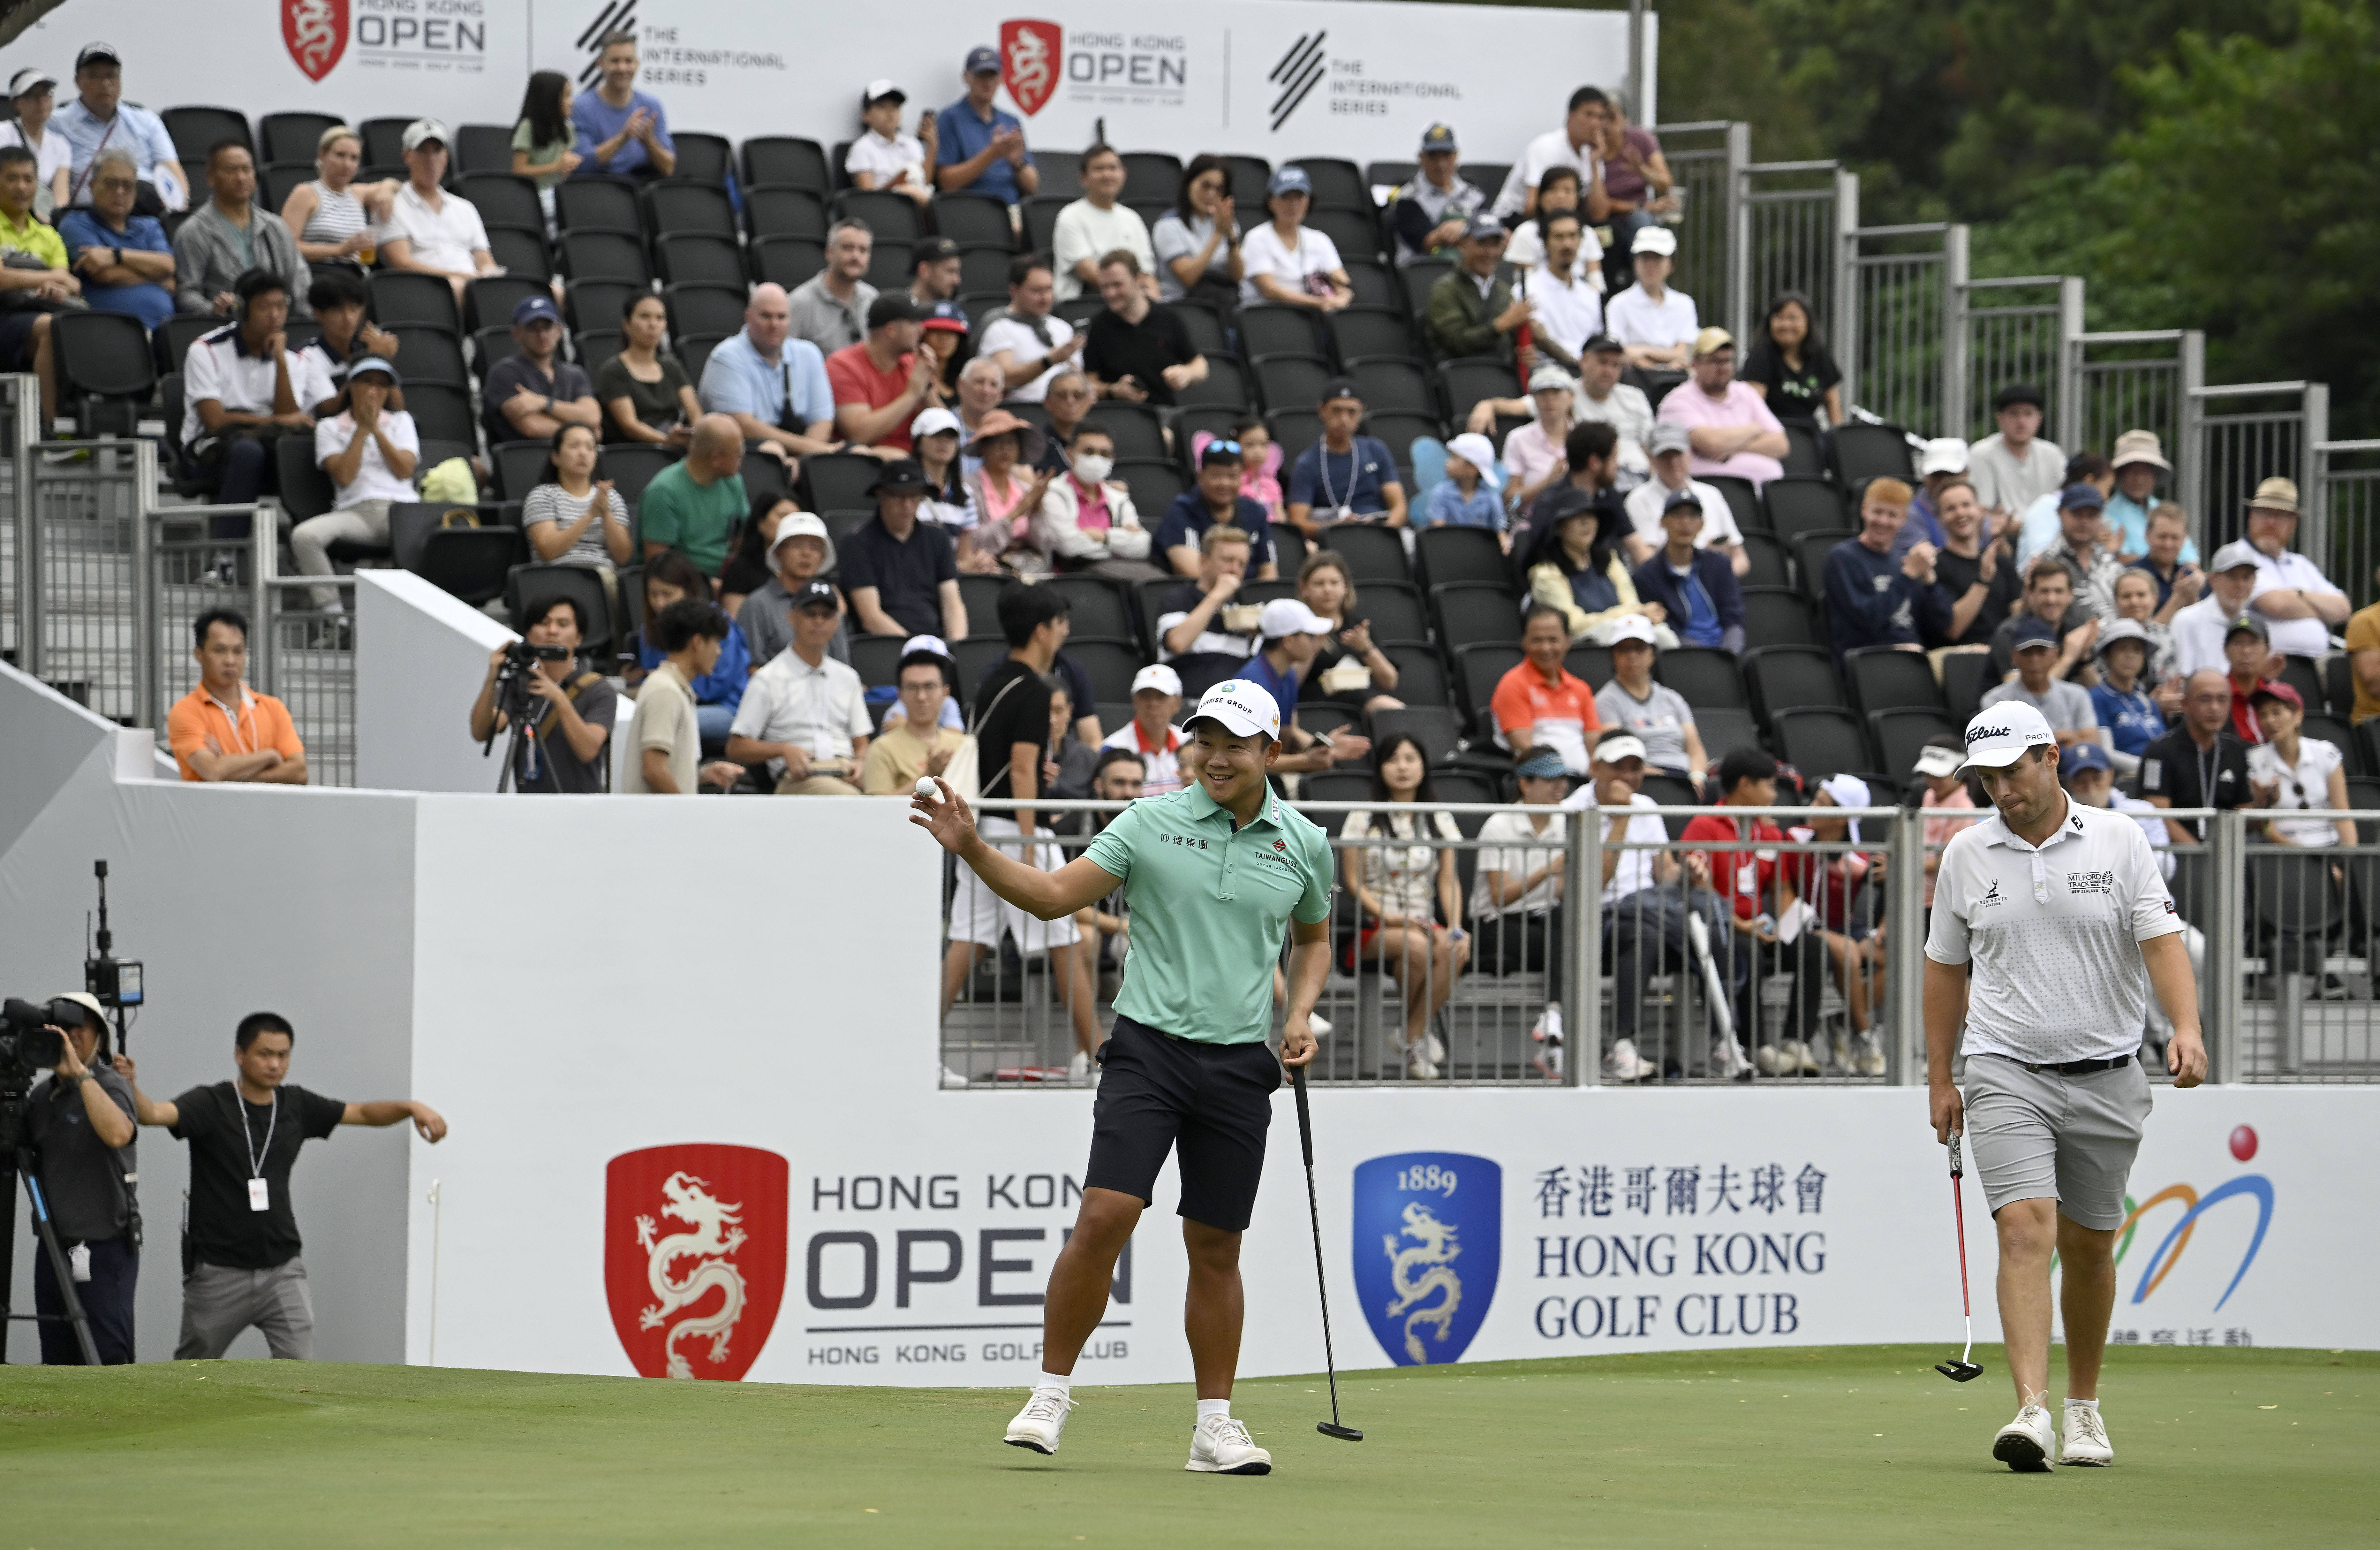 香港高尔夫球公开赛移动日 澳洲球星史密夫与泰国球手孔瓦迈并列领先